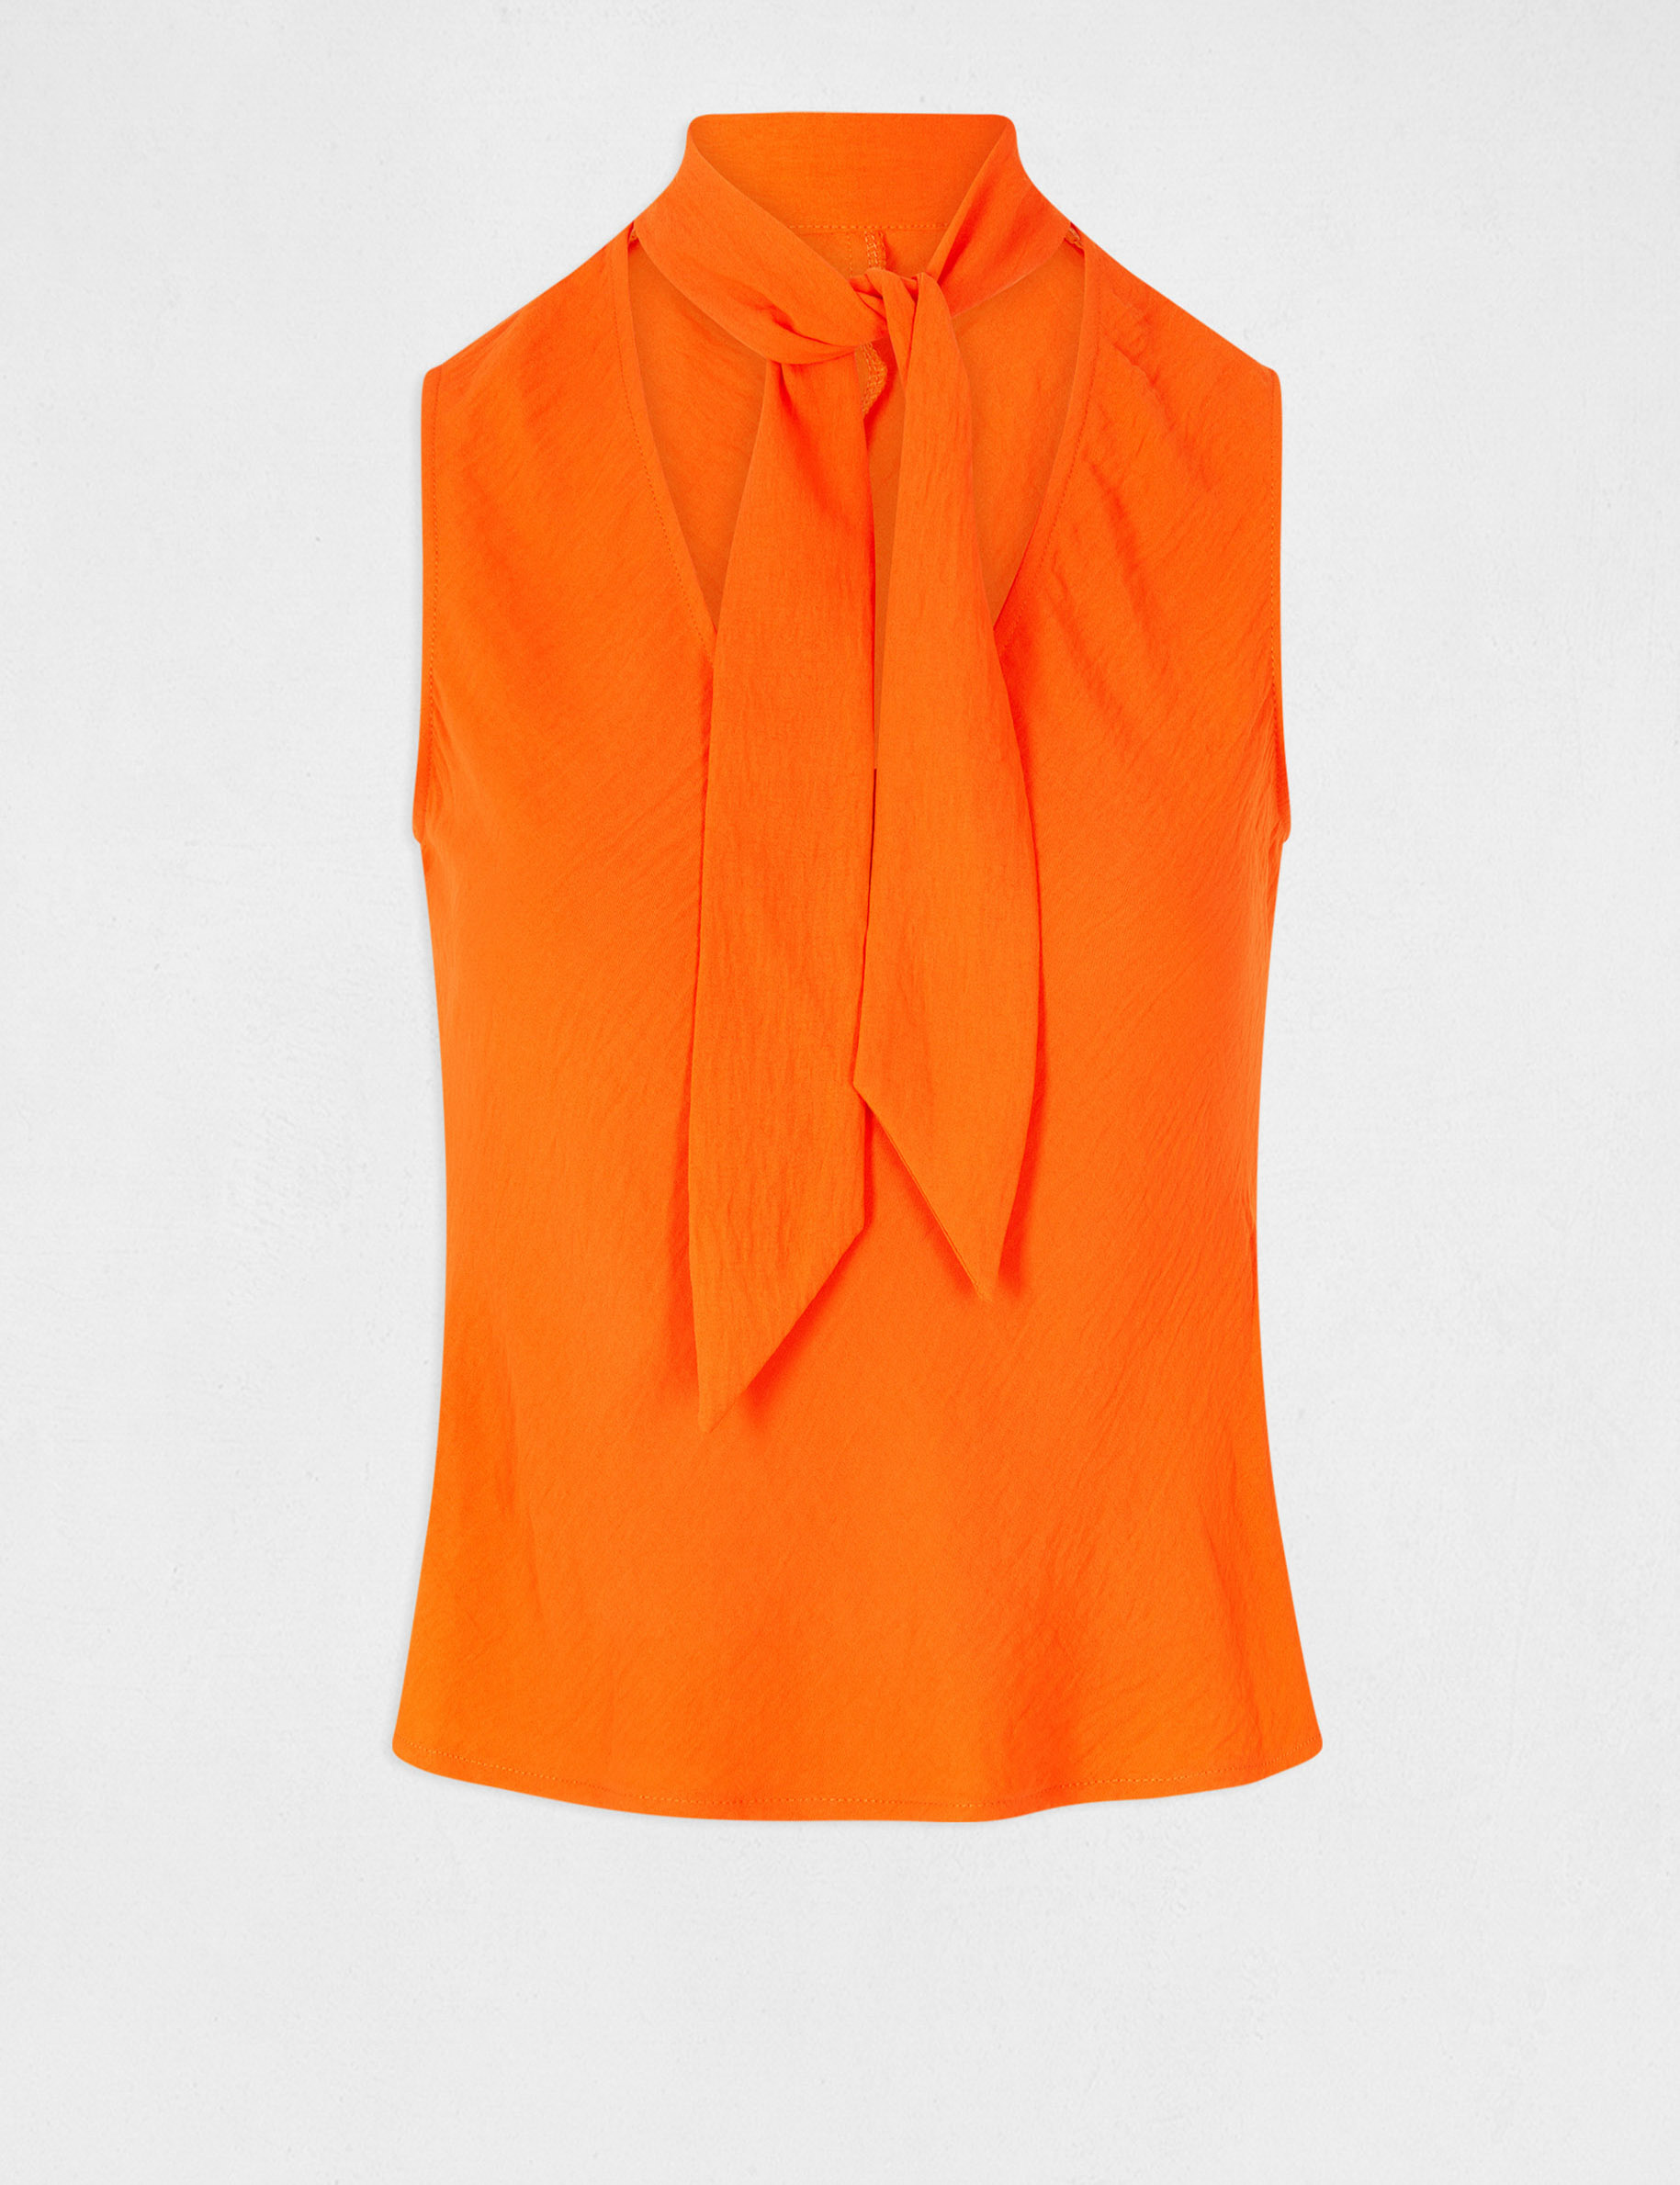 Mouwloze blouse met strikkraag oranje vrouw